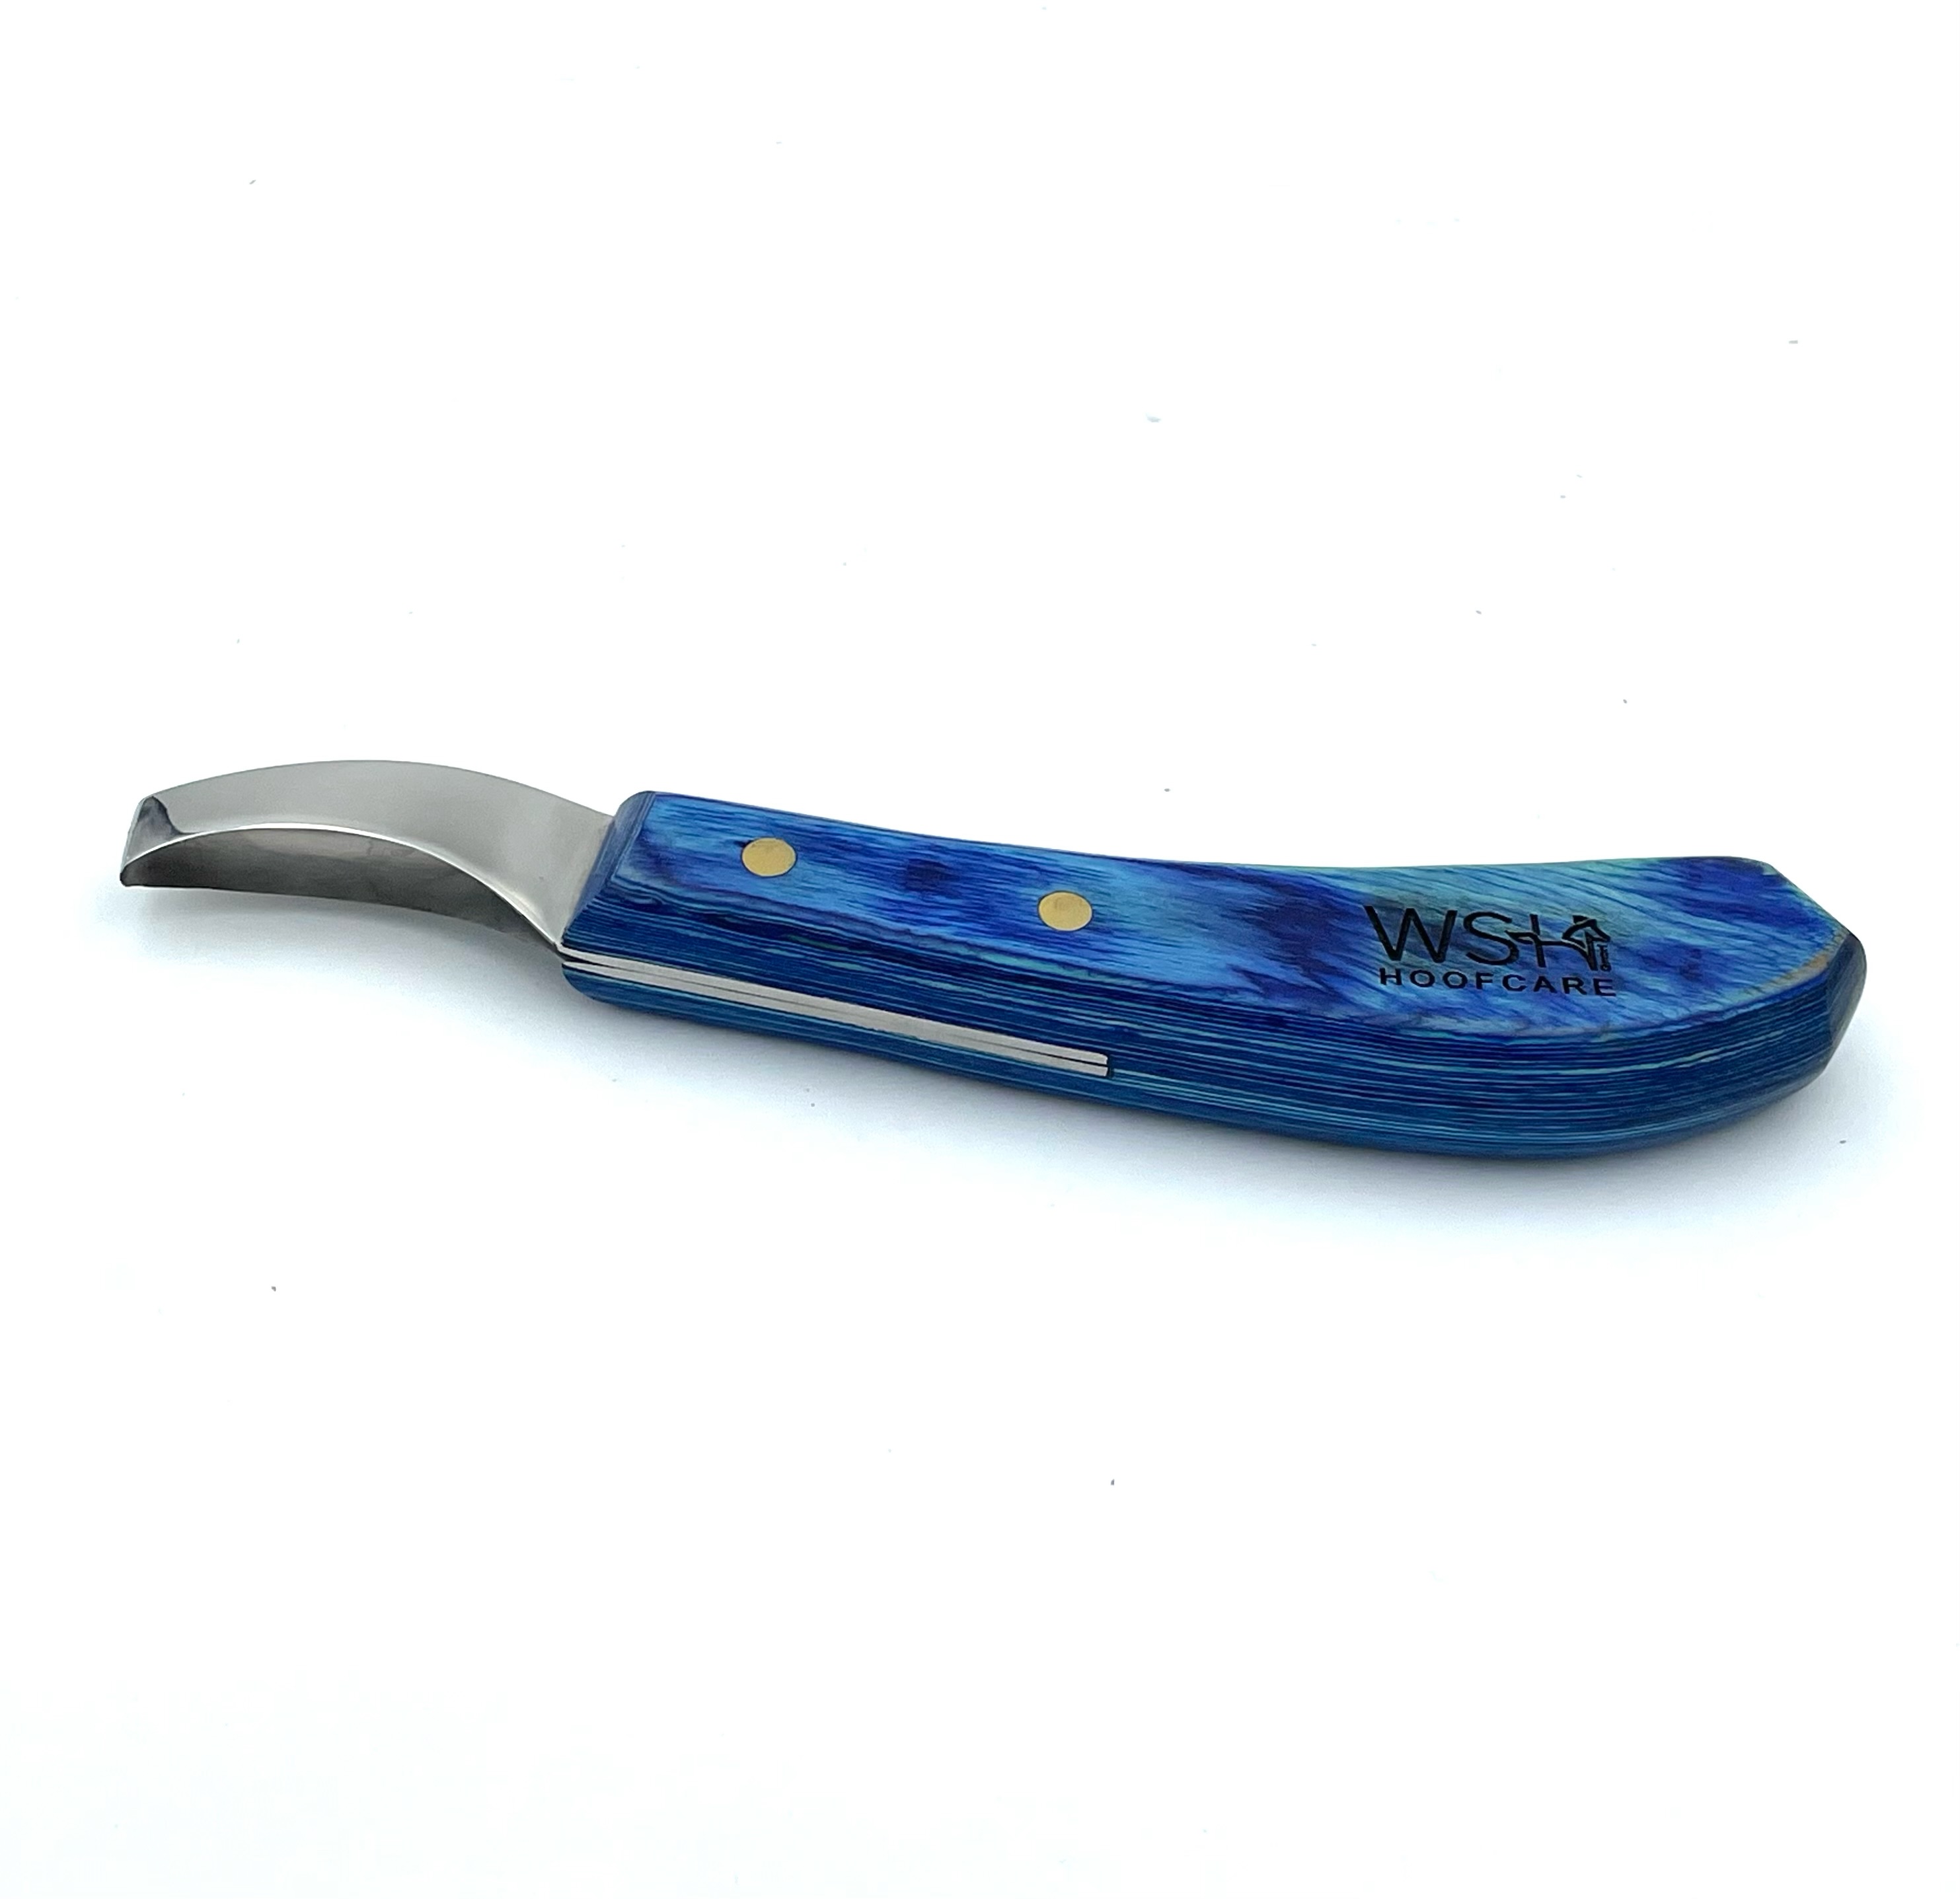 WSH Loop knife